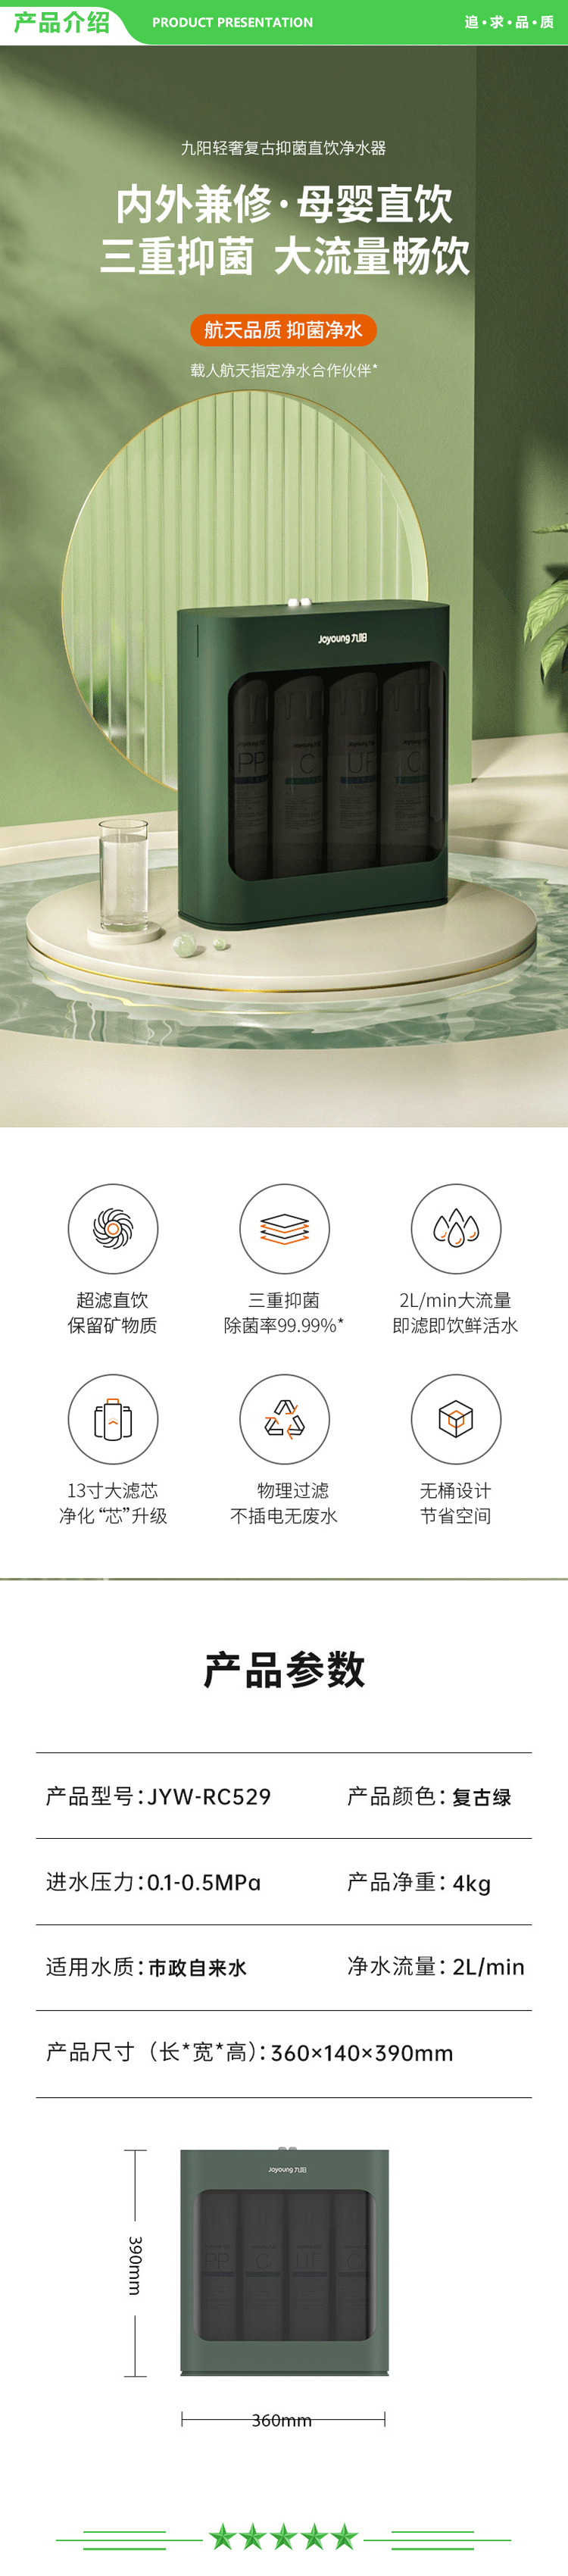 九阳 Joyoung JYW-RC529 净水器 厨房超滤直饮厨下式净水机自来水前置过滤器.jpg